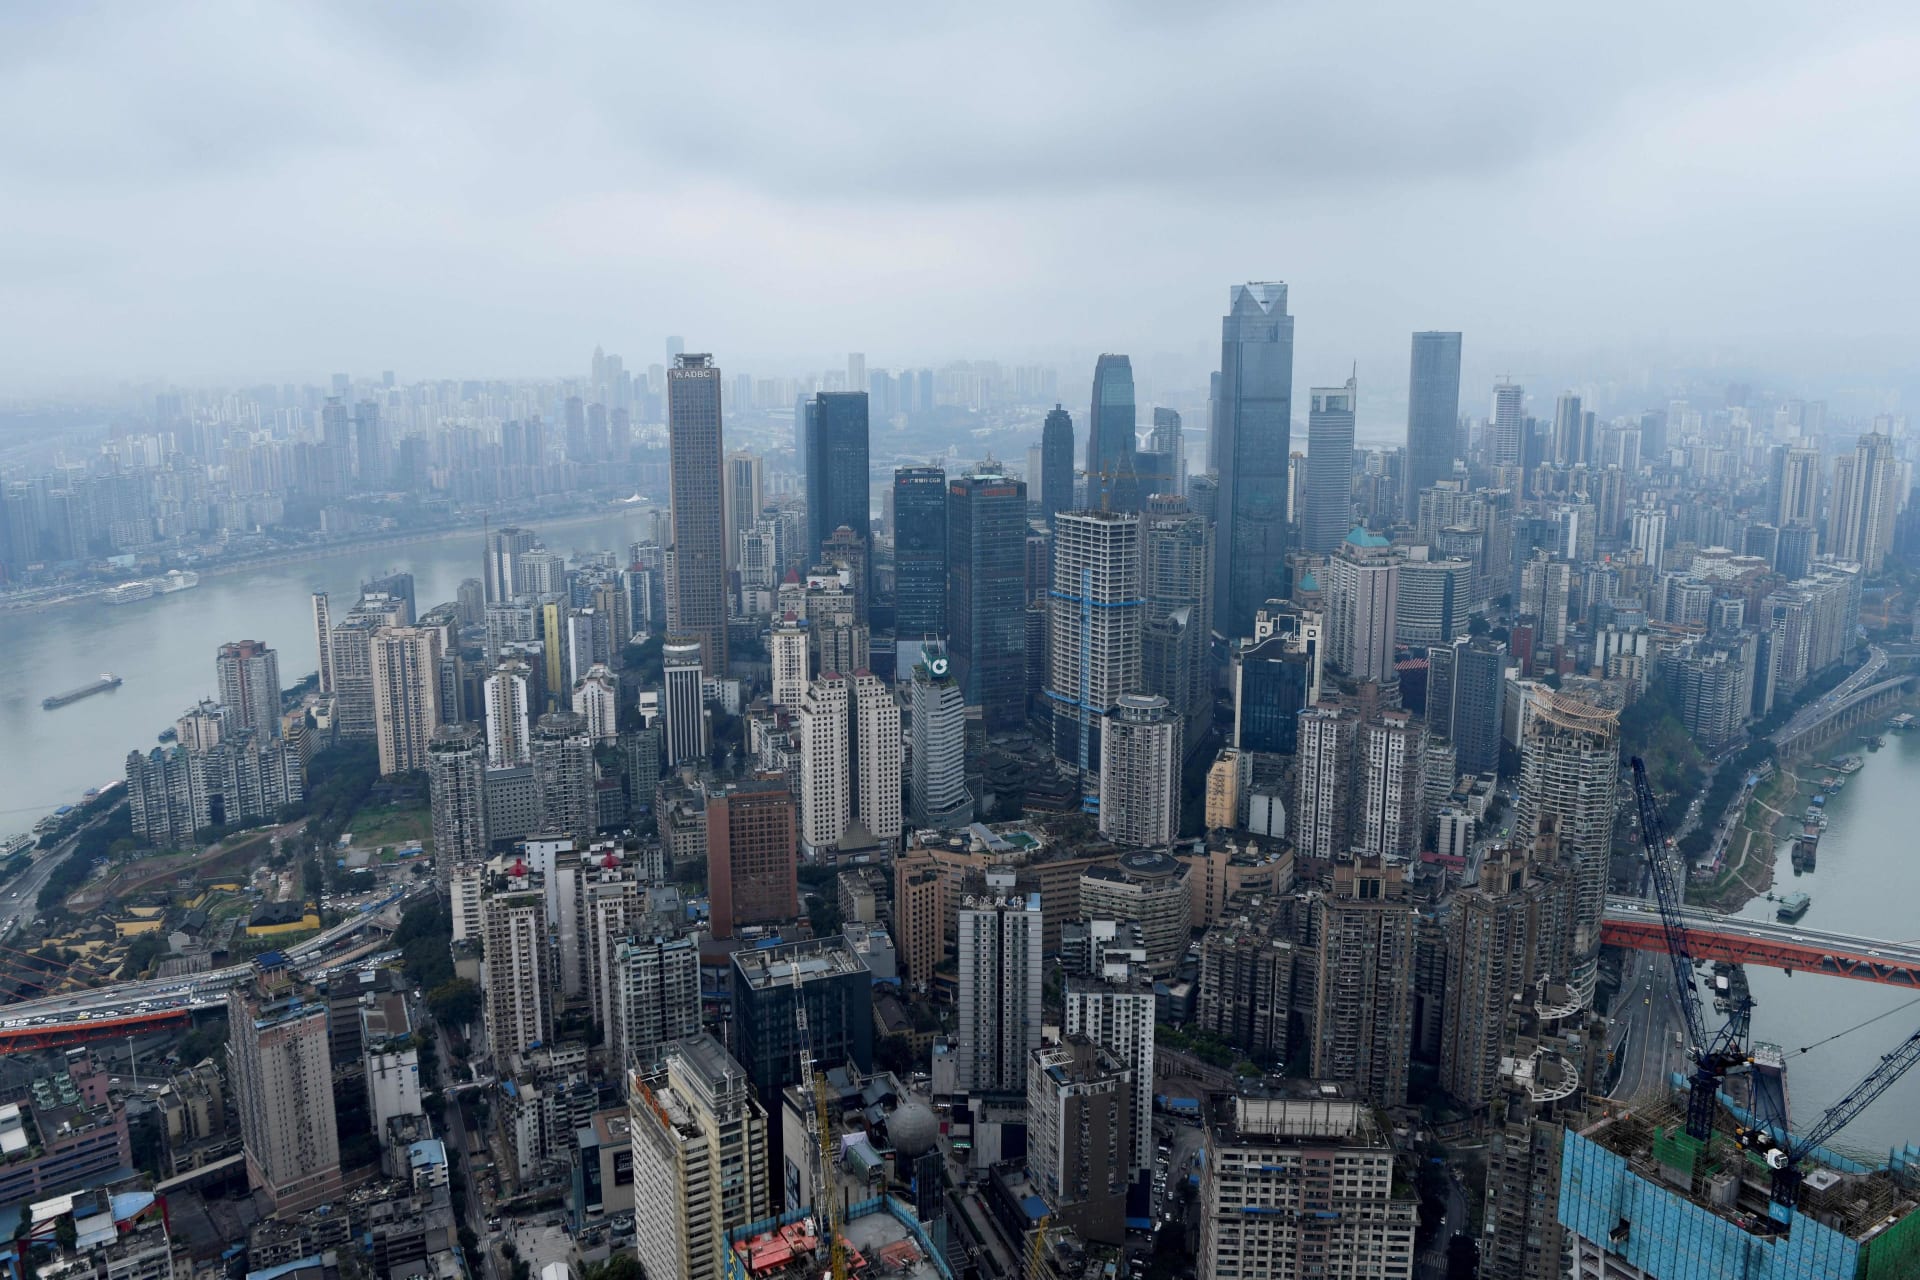 بدون تقليد وبدون تجاوز ارتفاع 500 متر..هكذا سيبدو "العصر الجديد" للعمارة في الصين